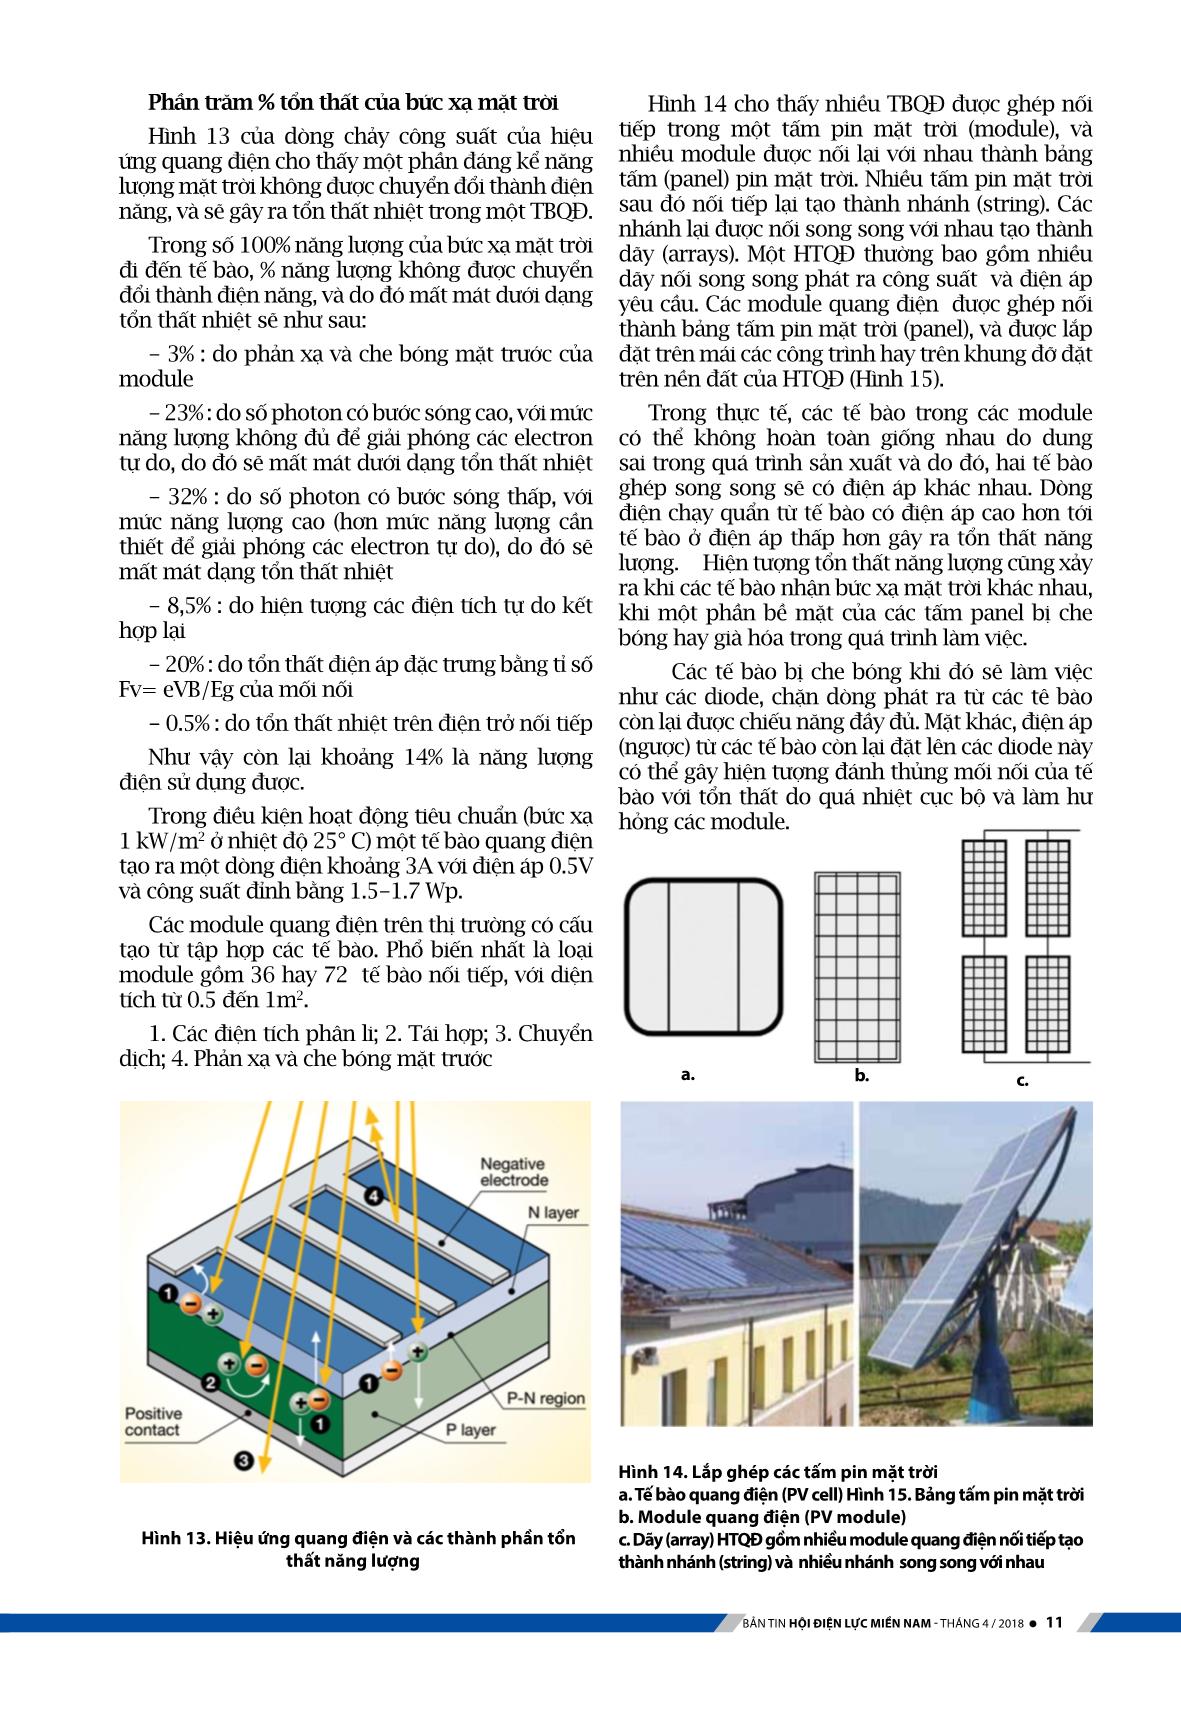 Kỹ thuật hệ thống điện mặt trời với công nghệ quang điện (Phần 1) trang 7